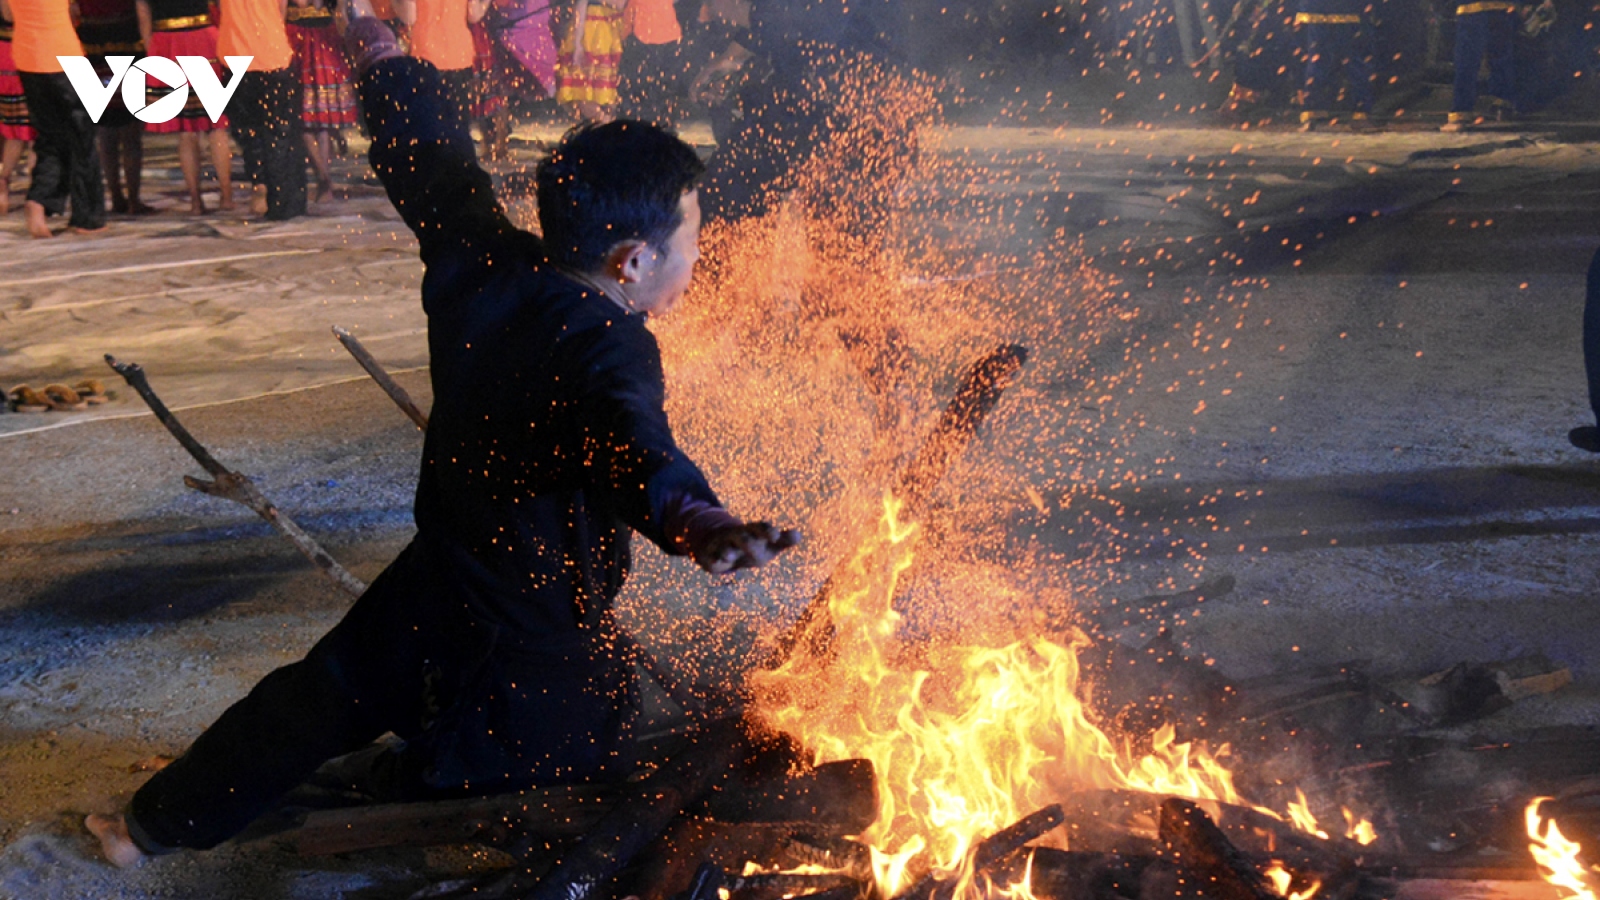 Độc đáo tục nhảy lửa của người Dao đầu bằng Lai Châu